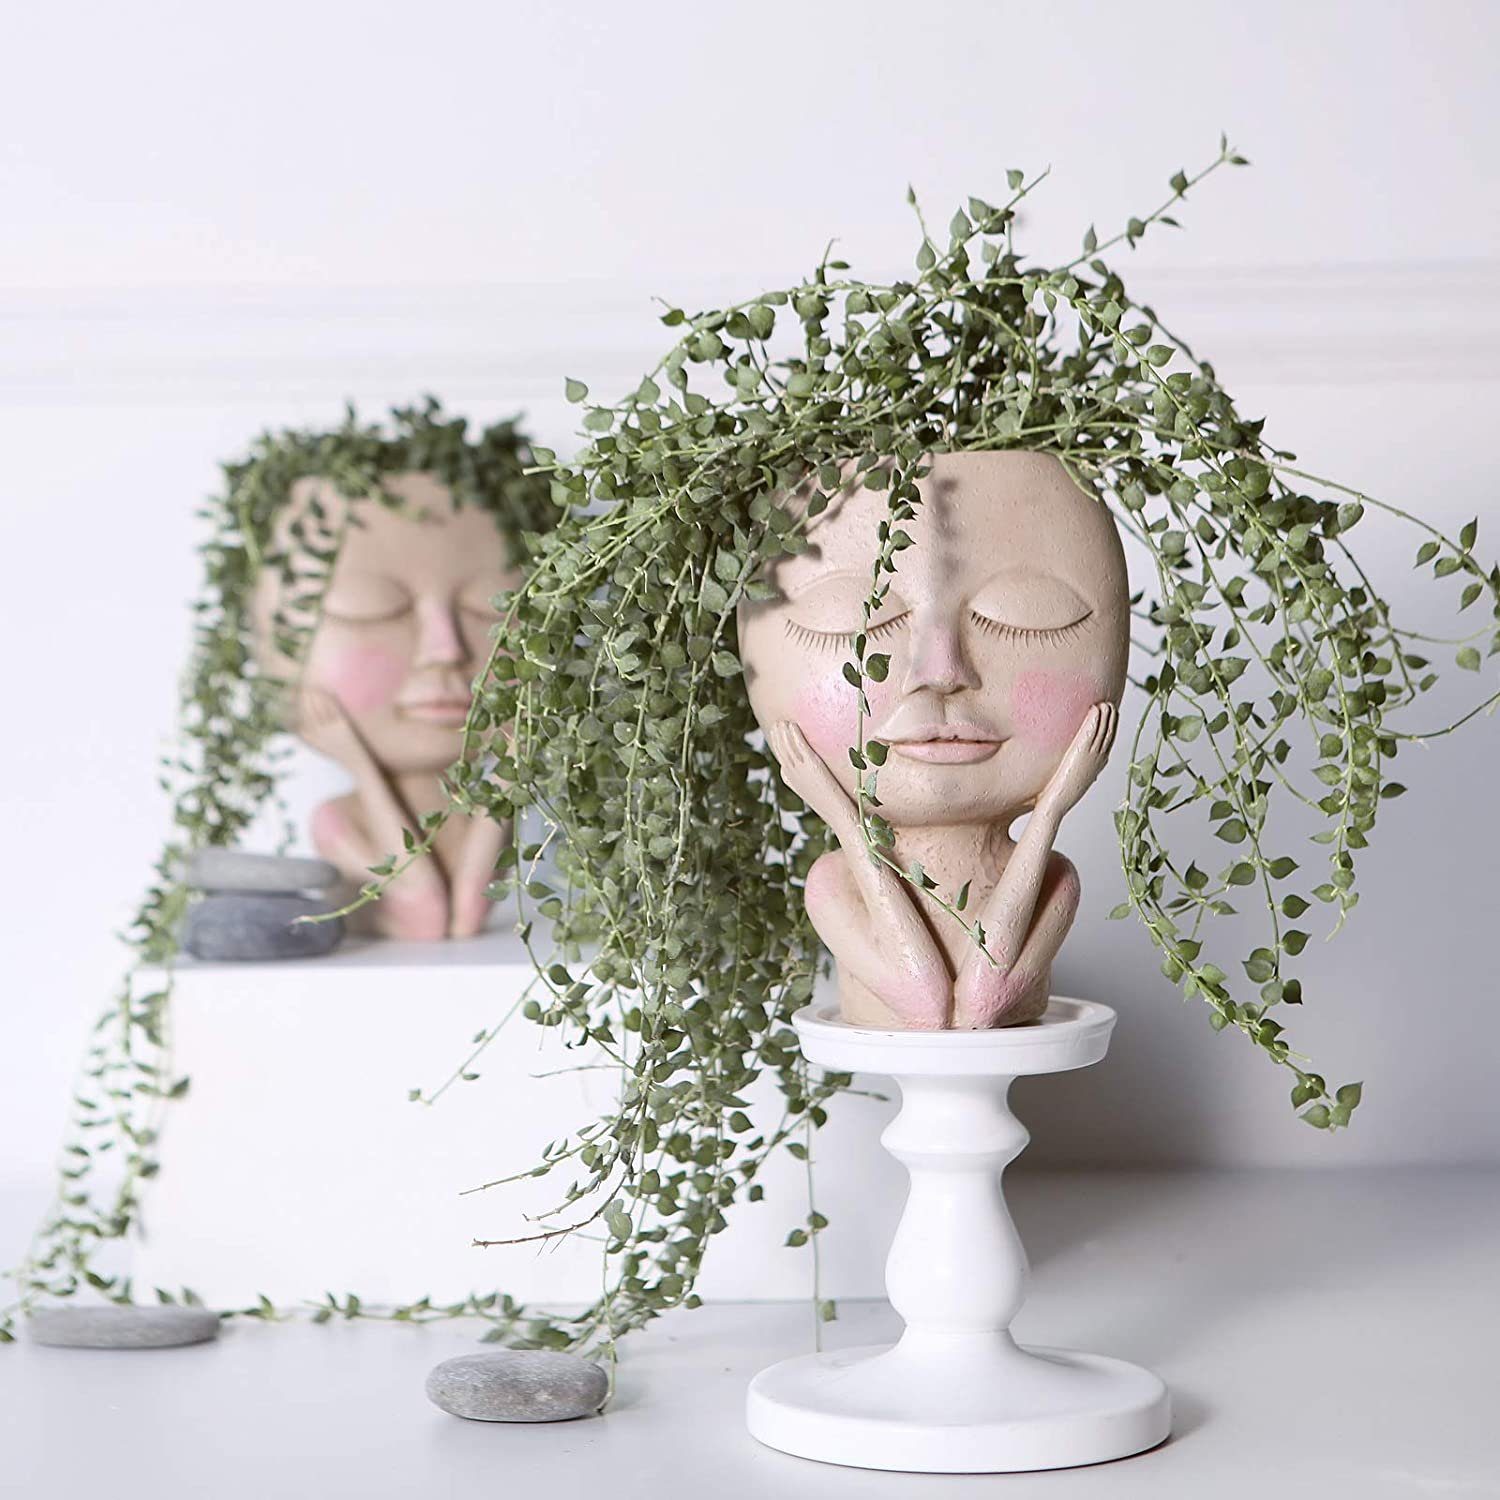 XDeer Blumentopf Blumentöpfe mit Design Design,Blumentöpfe Kopf mit Gesicht,Menschlicher Vase Menschlicher Hole, Drainage menschlicher Gesicht,kreative Gesicht Kopf